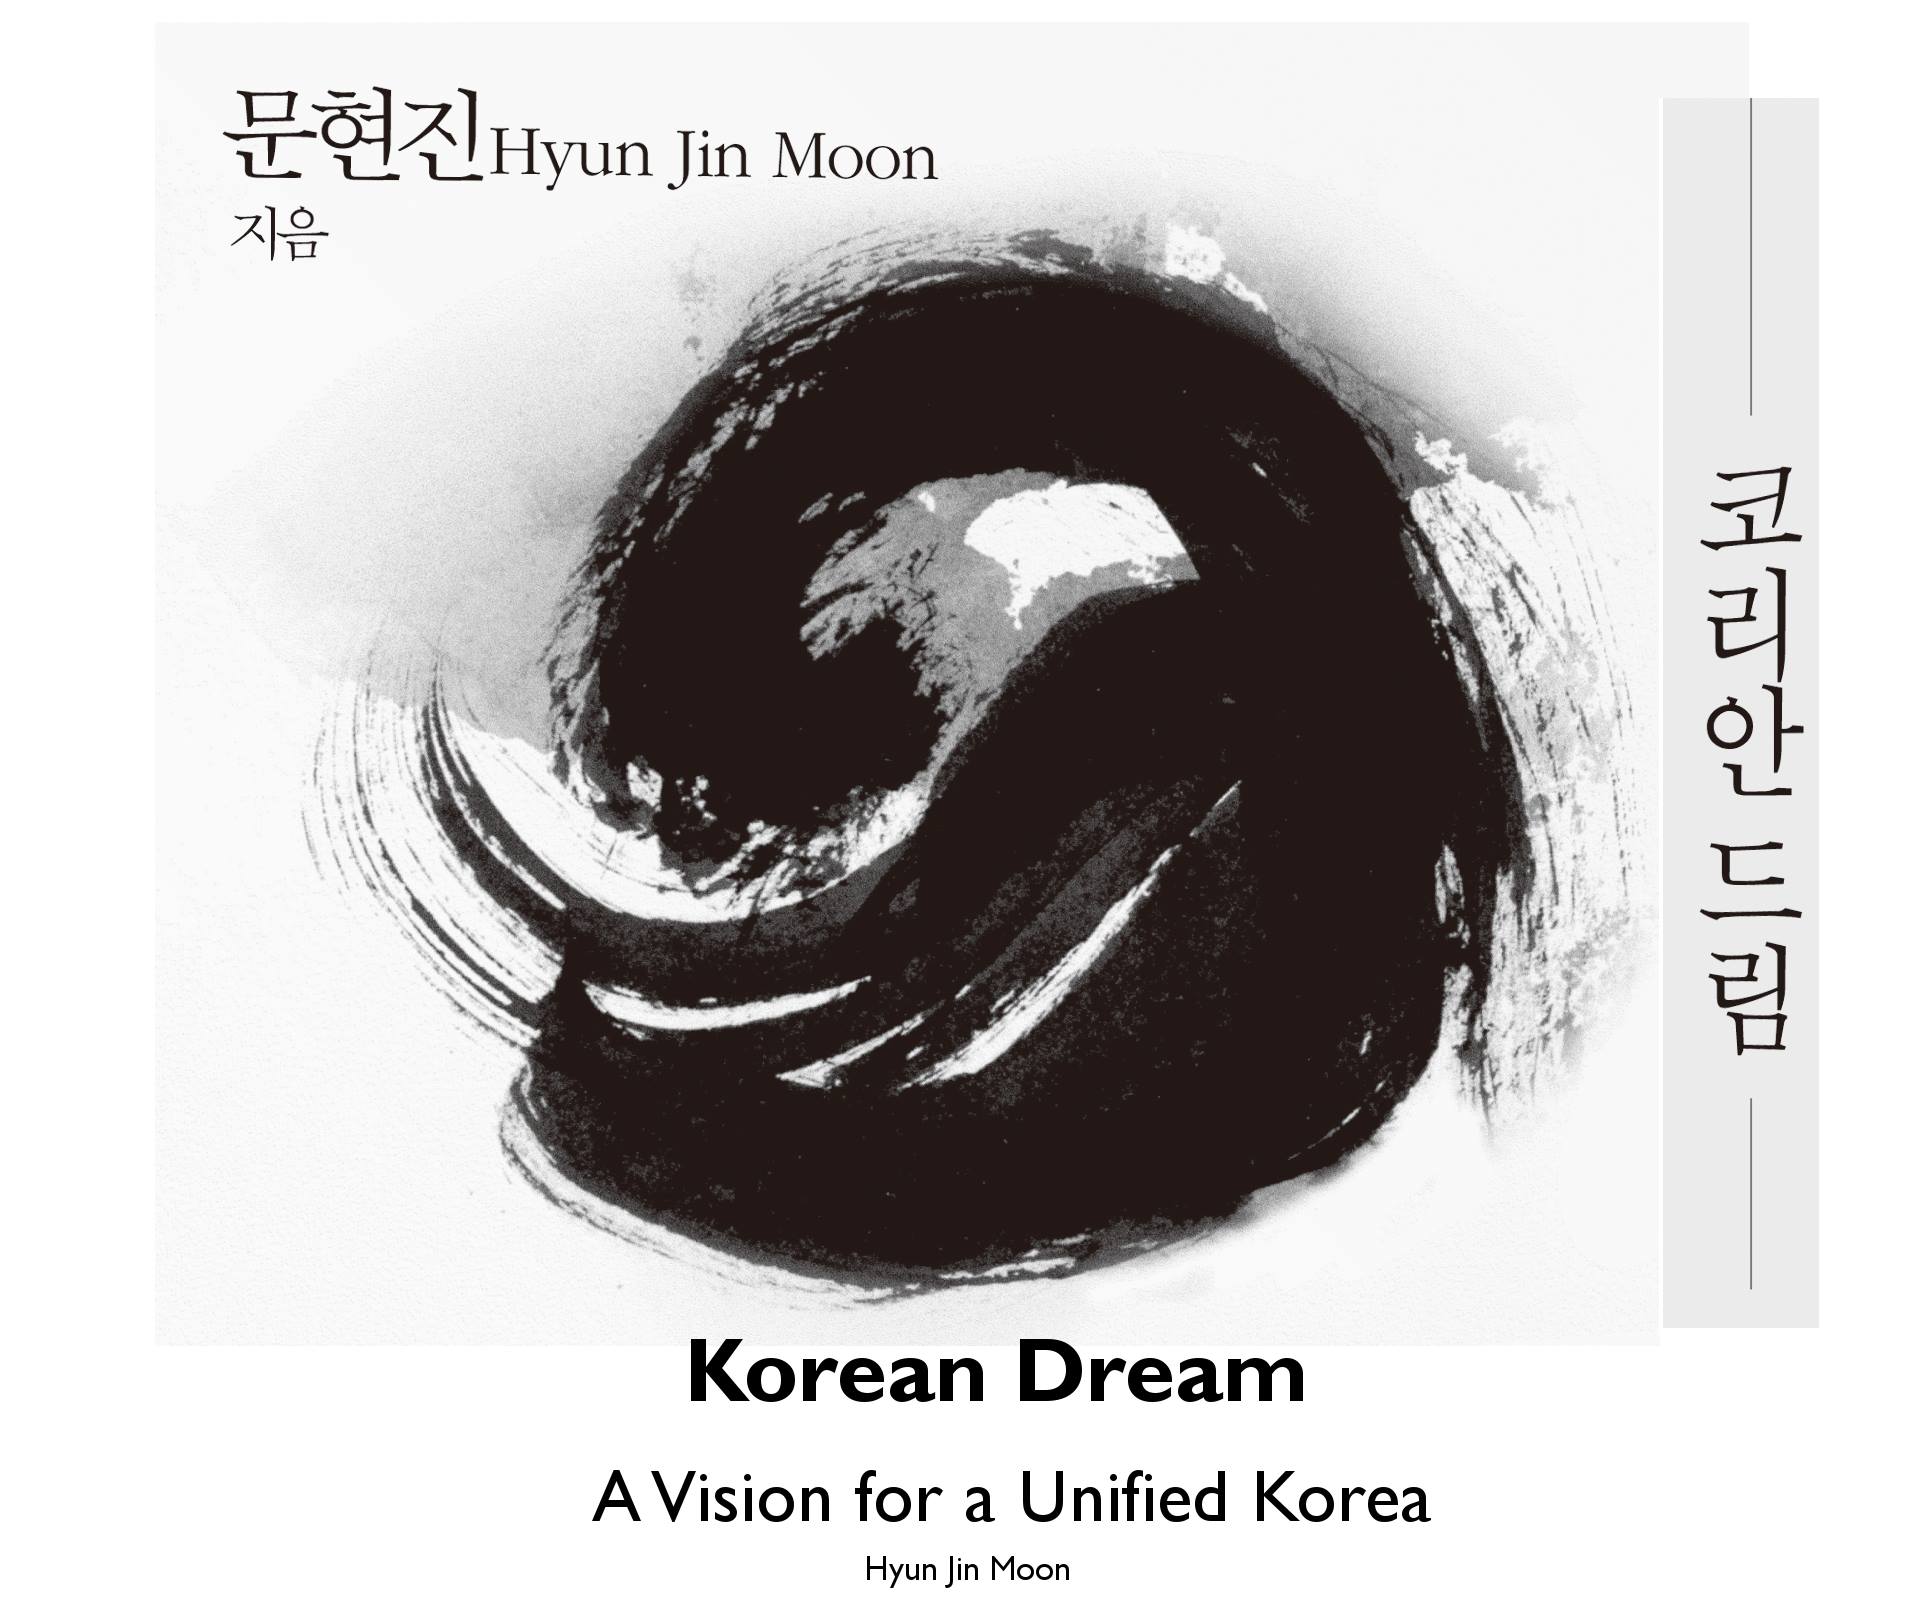 El Nuevo Libro del Dr. Moon: “El Sueño Coreano: La Visión de una Corea Unificada” ya está a la venta